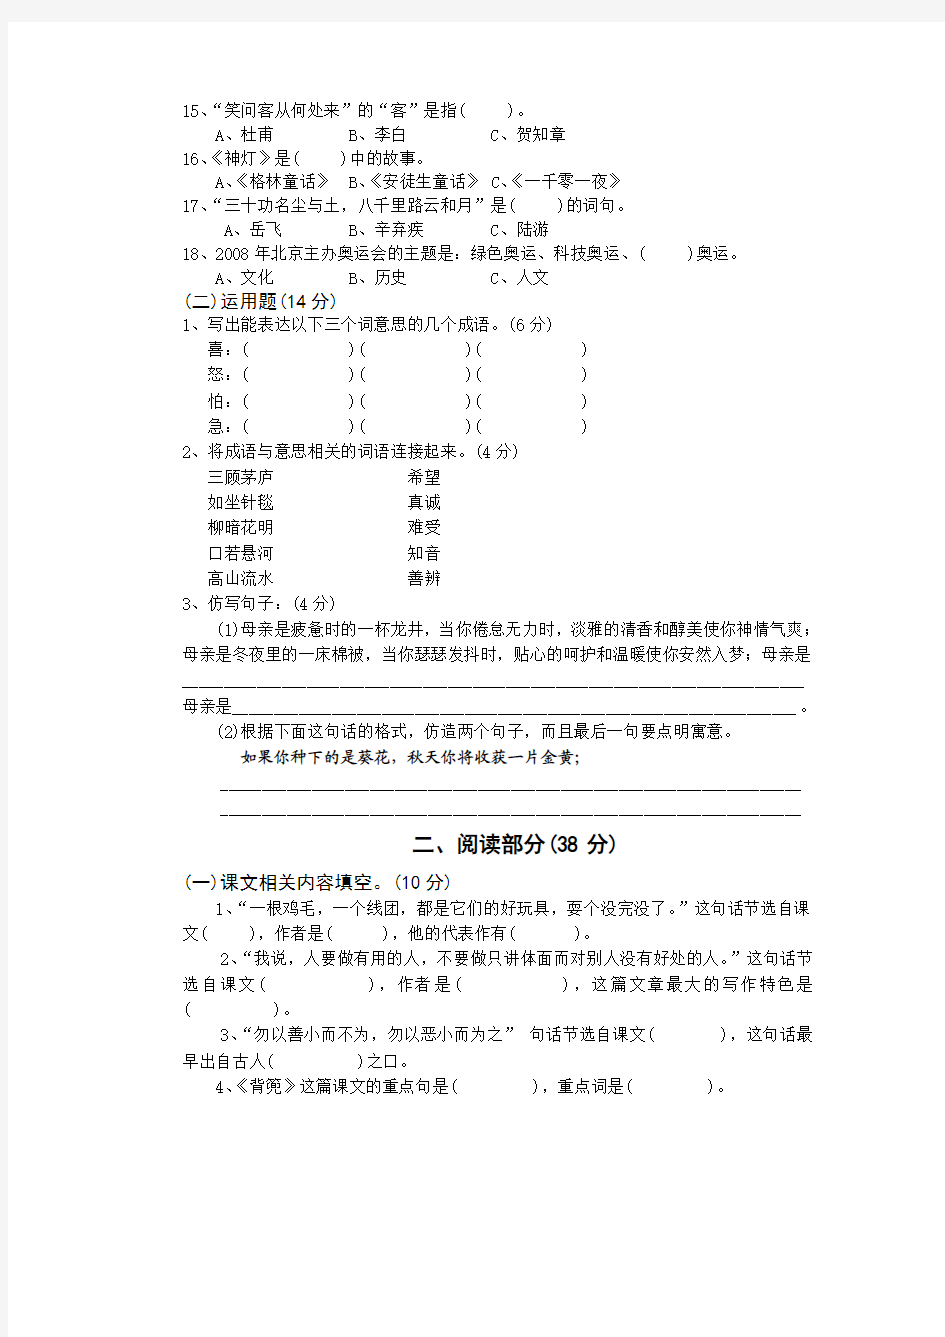 2006年椒江区实验小学五年级阅读与作文竞赛试卷